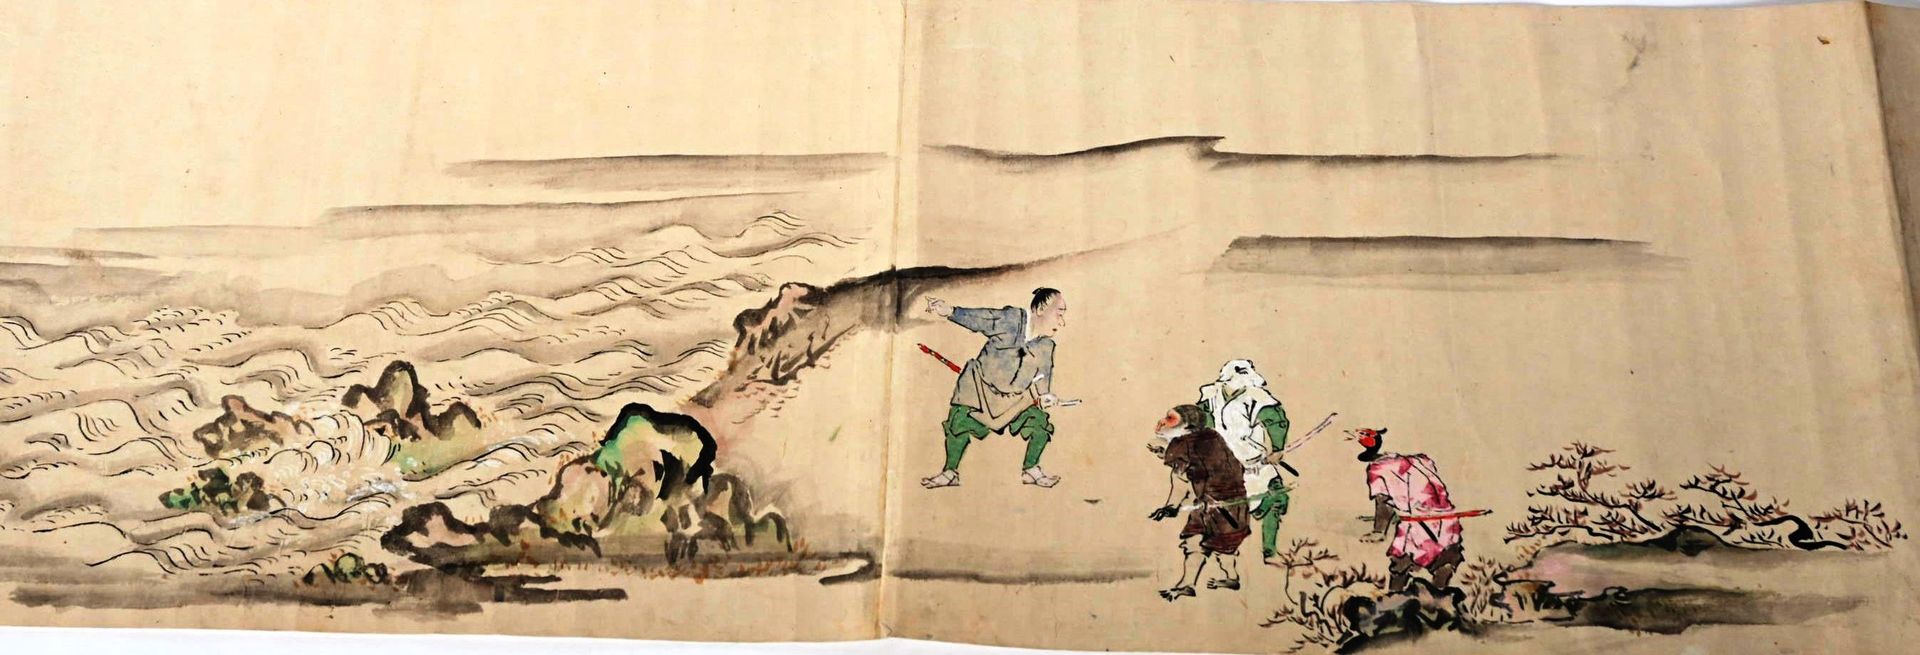 Long rouleaux MAKIMONO 日本。

长长的MAKIMONO纸质卷轴，其场景讲述了桃太郎和他的三个同伴的冒险。